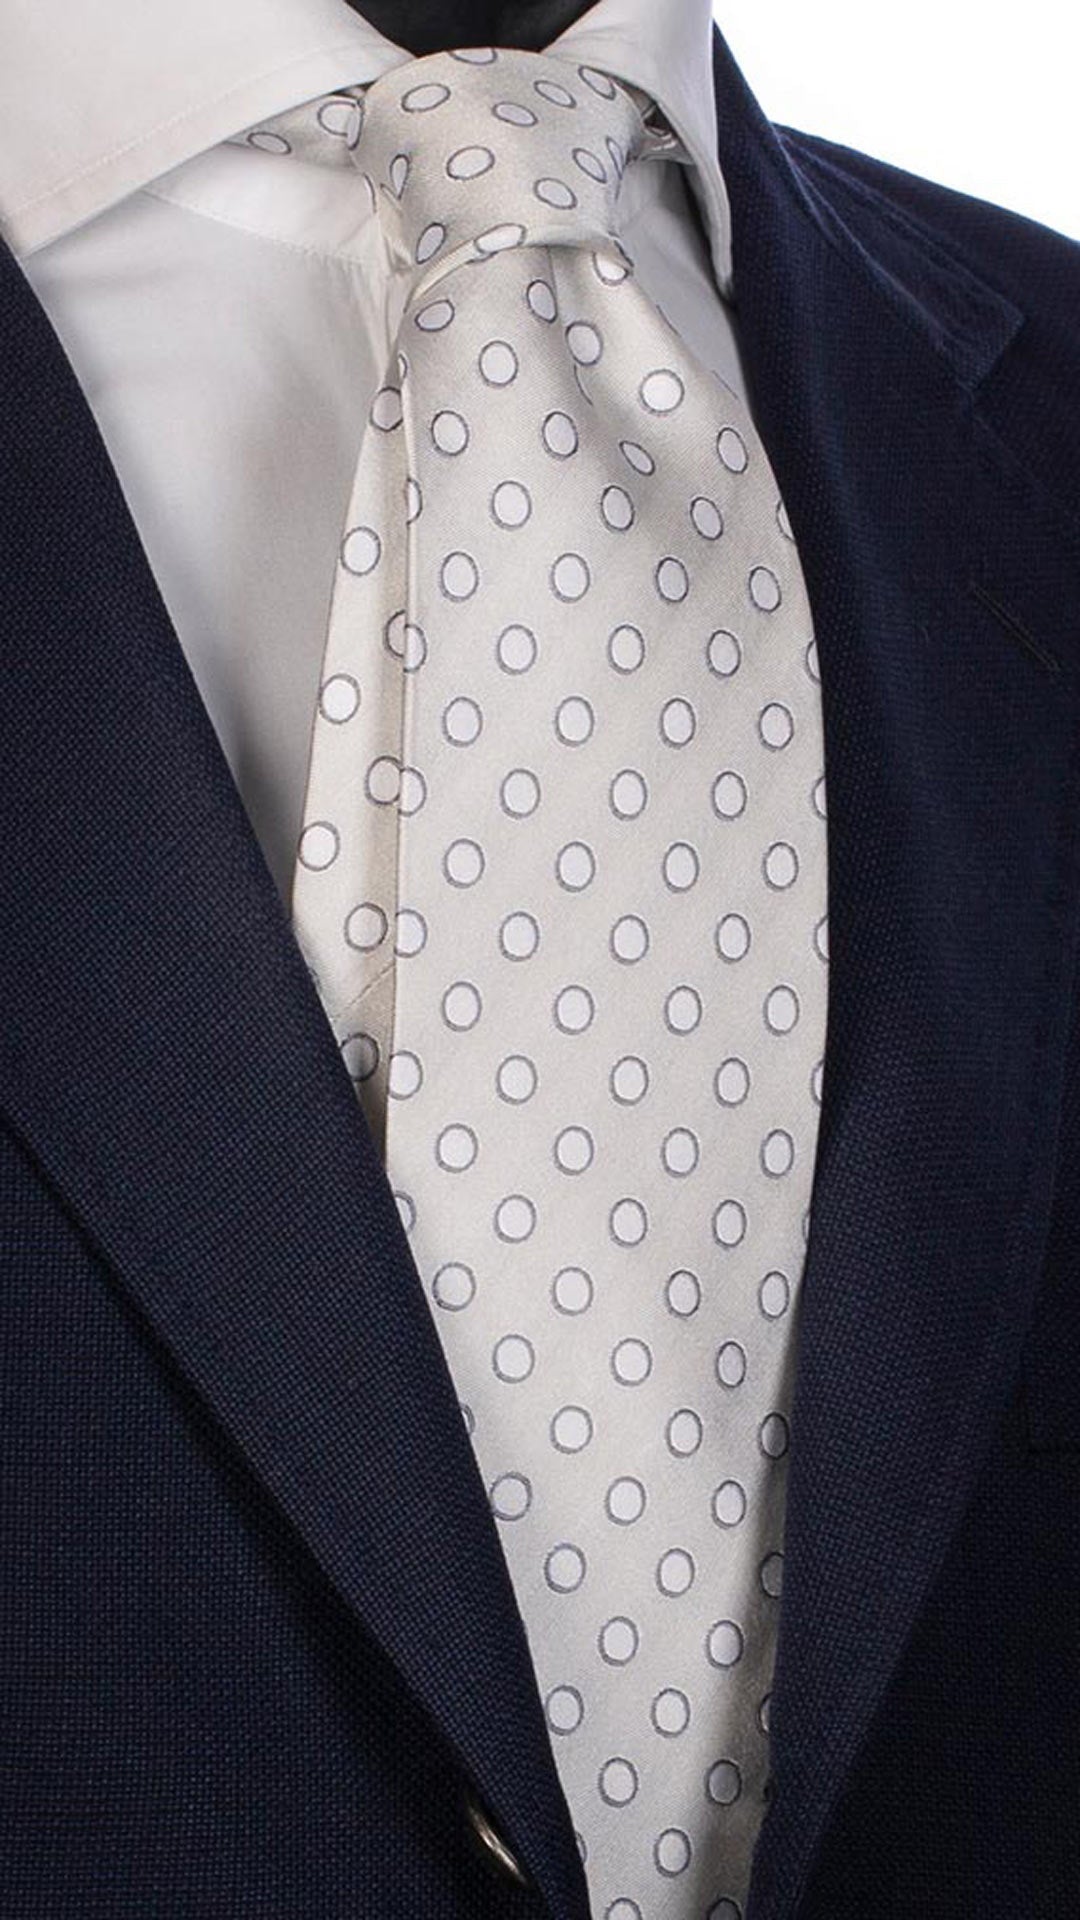 Cravatta da Cerimonia di Seta Bianca Avorio a Pois Grigio Bianco CY2559 Made in Italy Graffeo Cravatte